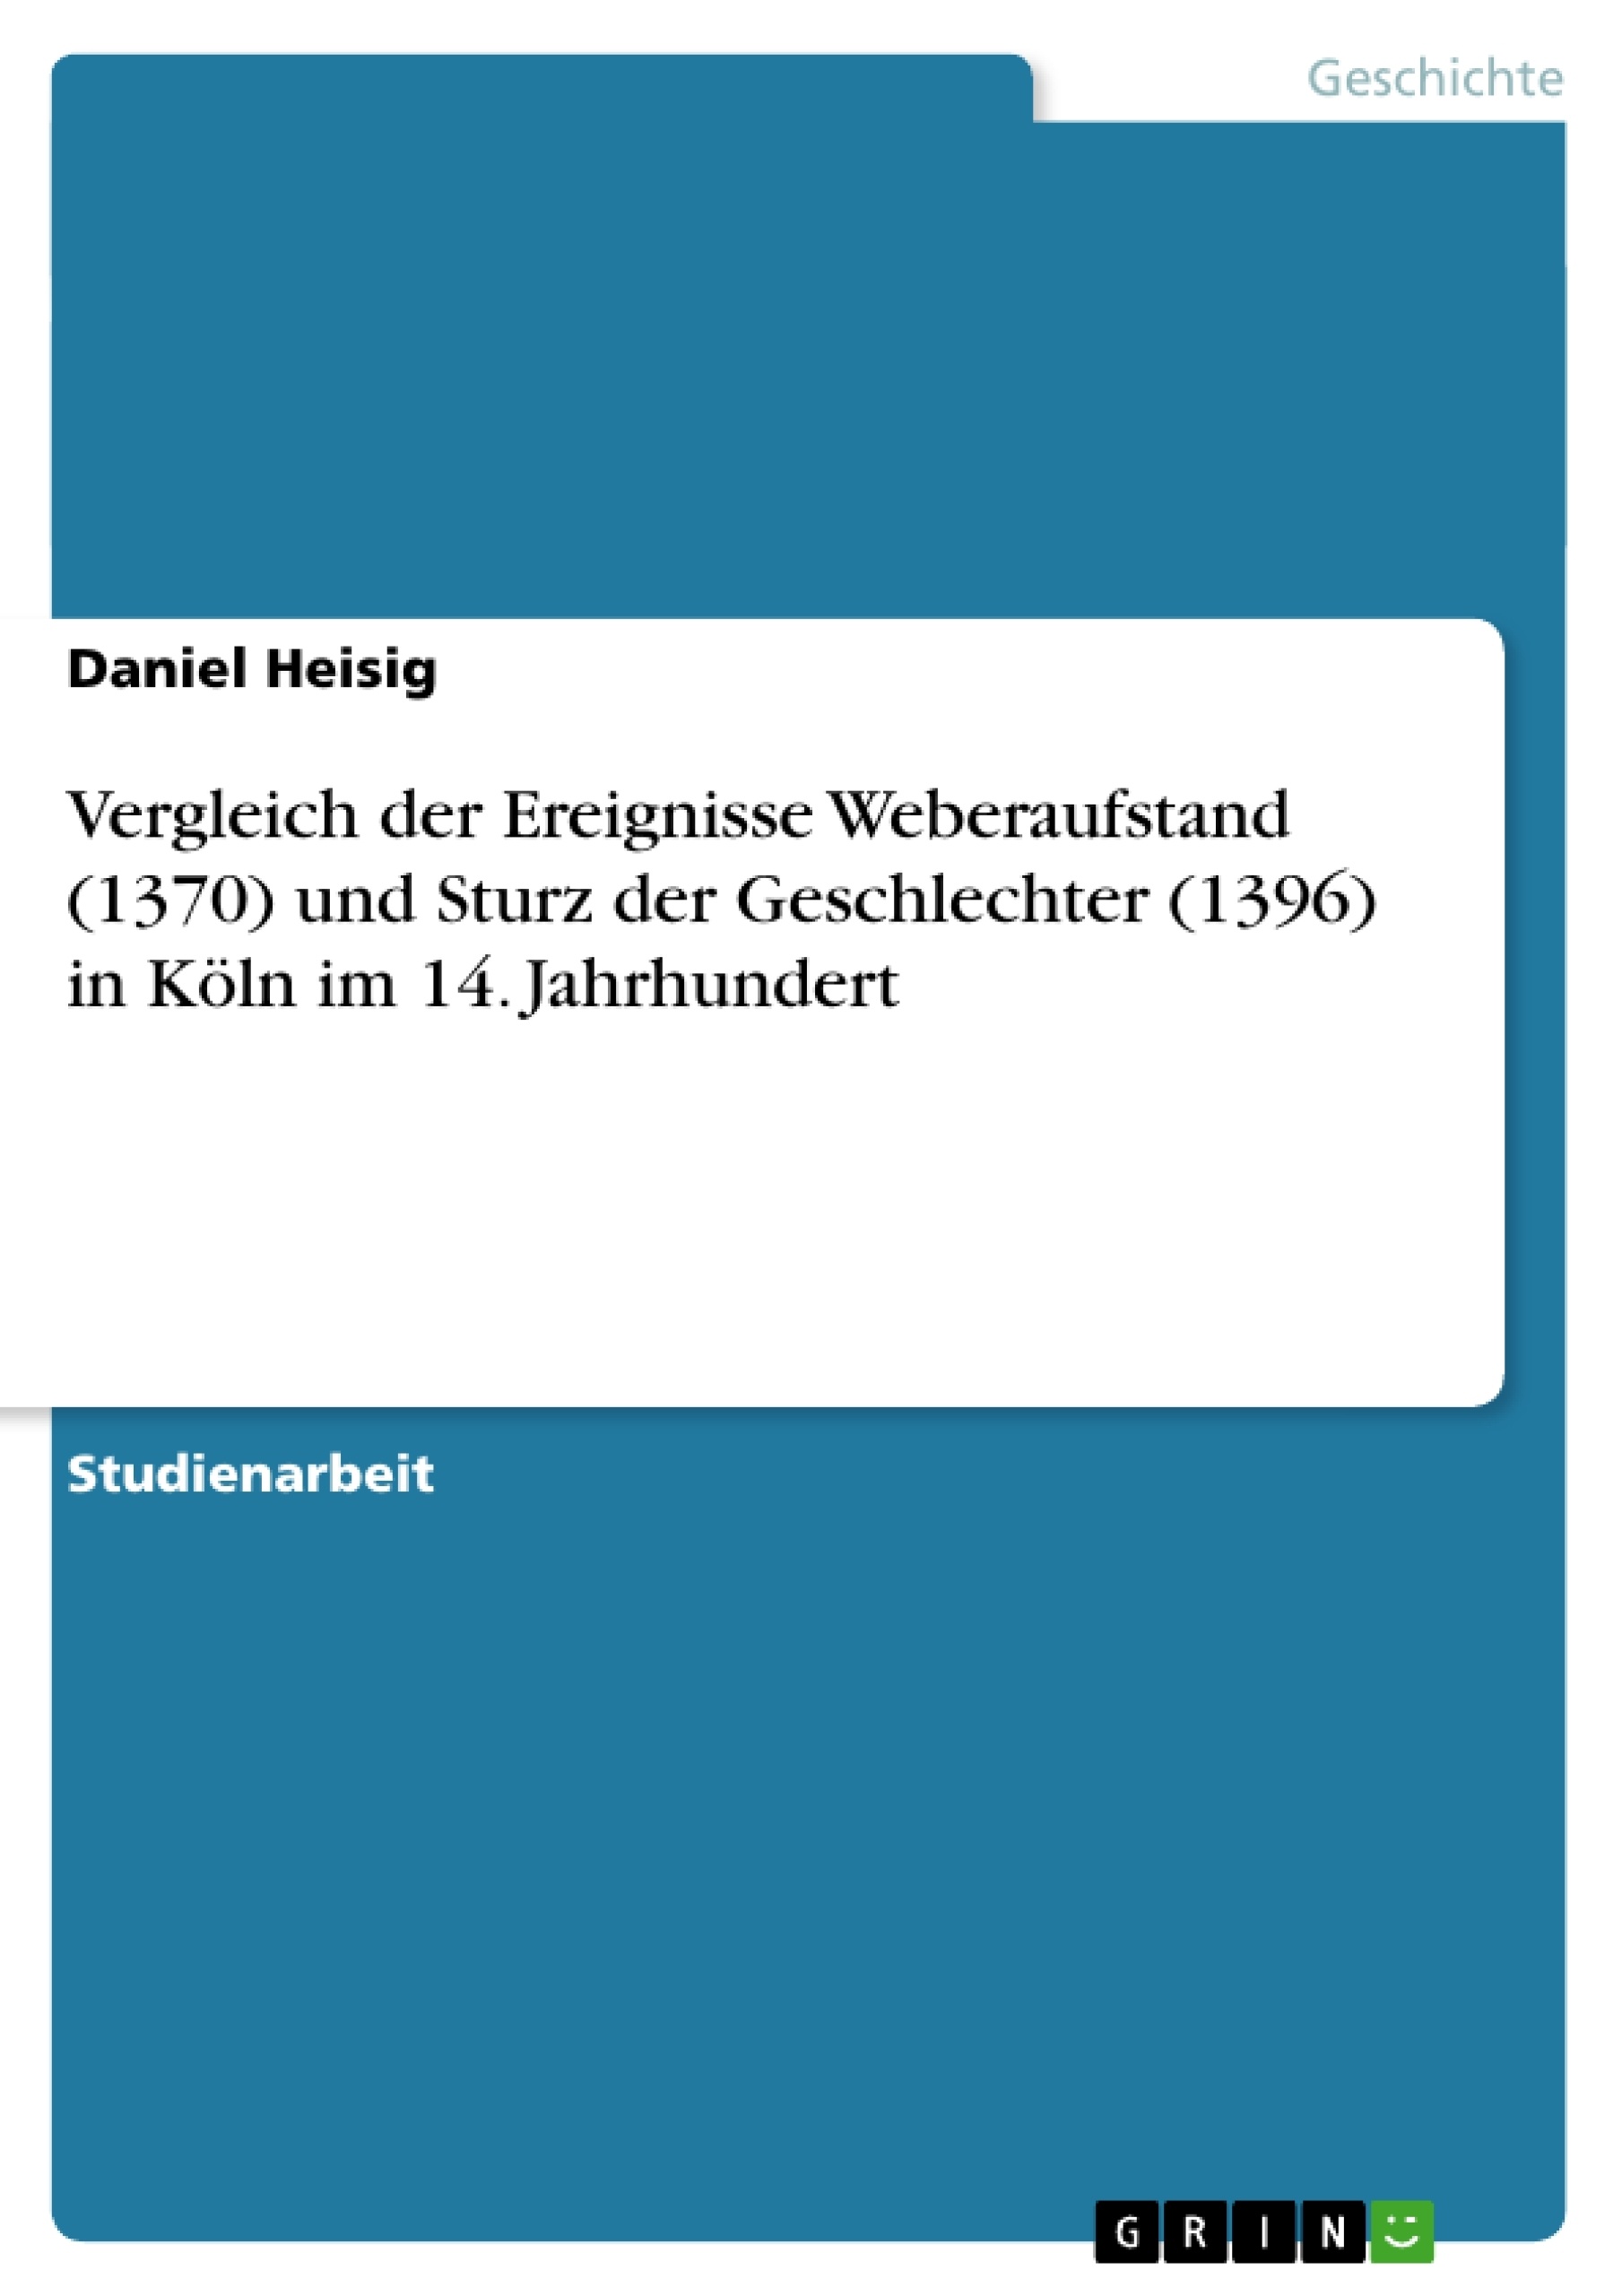 Title: Vergleich der Ereignisse Weberaufstand (1370) und Sturz der Geschlechter (1396) in Köln im 14. Jahrhundert